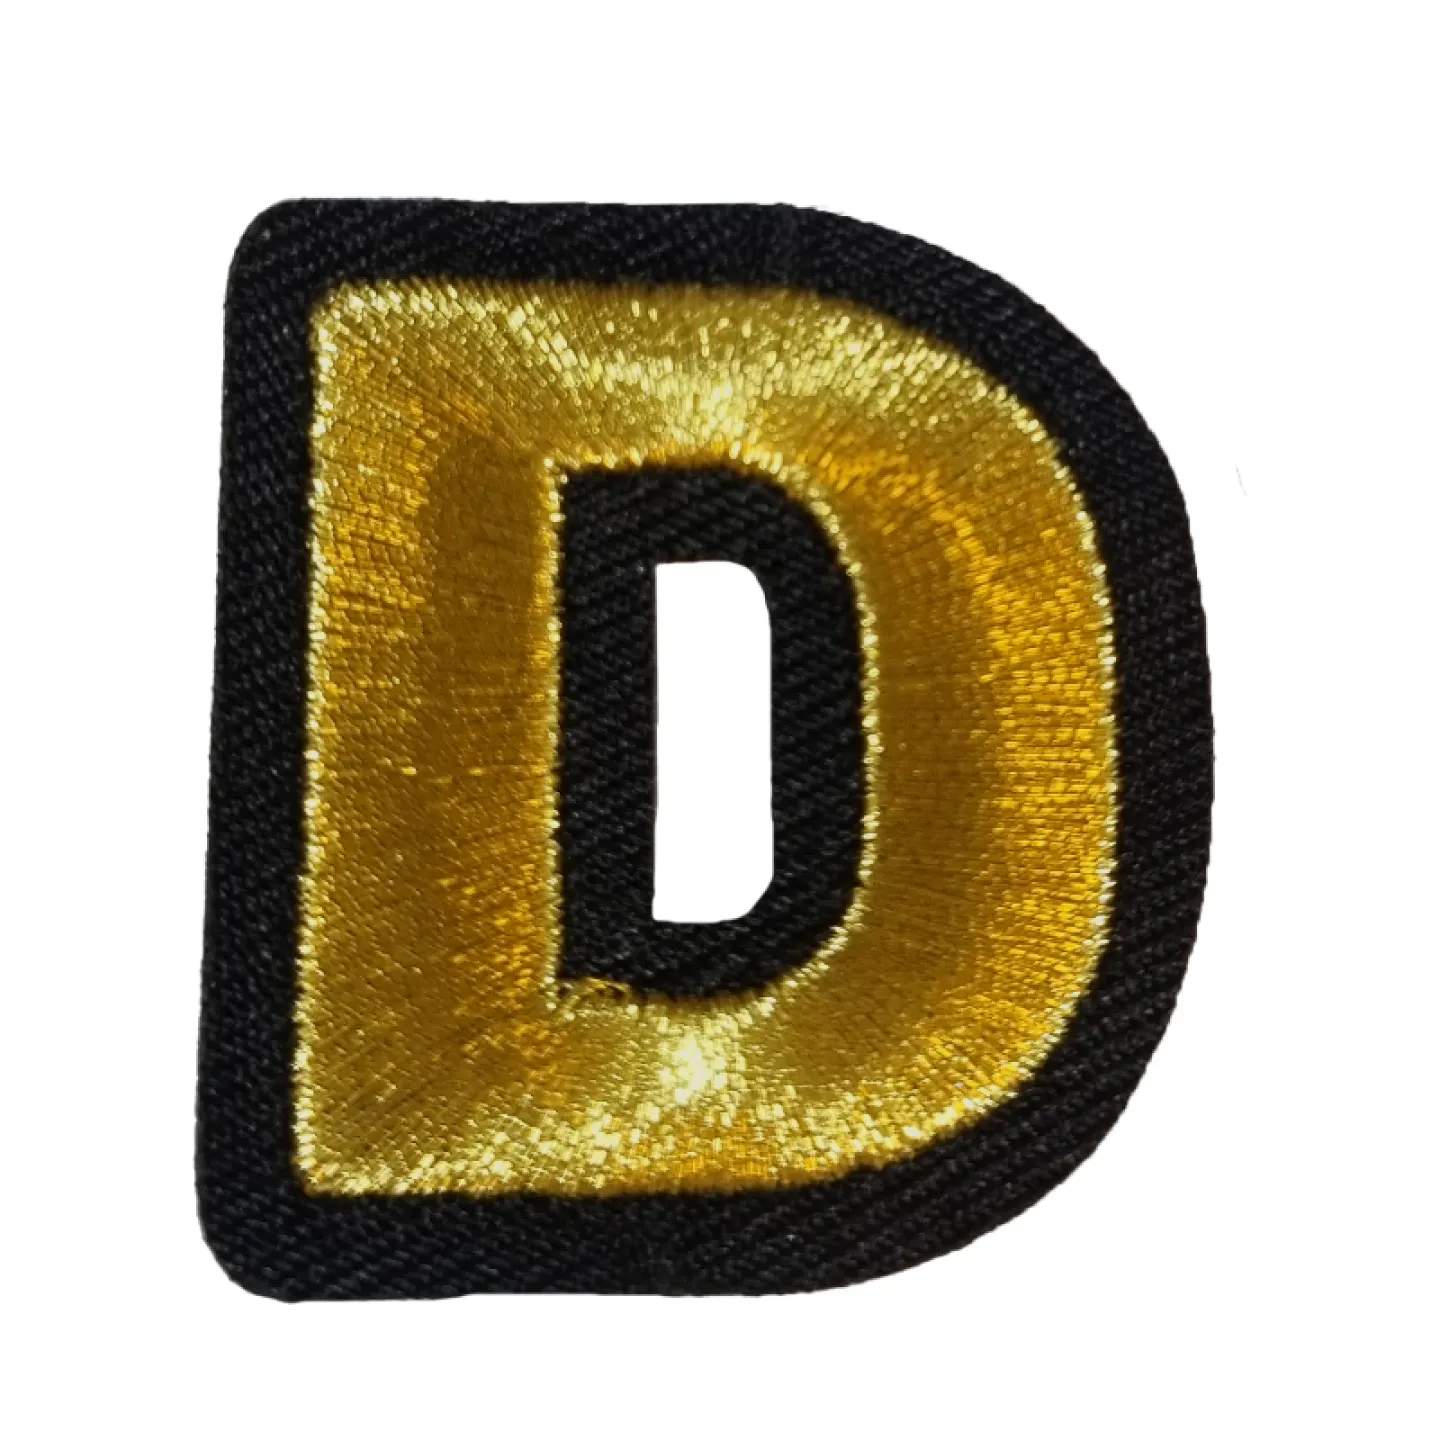 Kielegat embleem Gouden letter D.